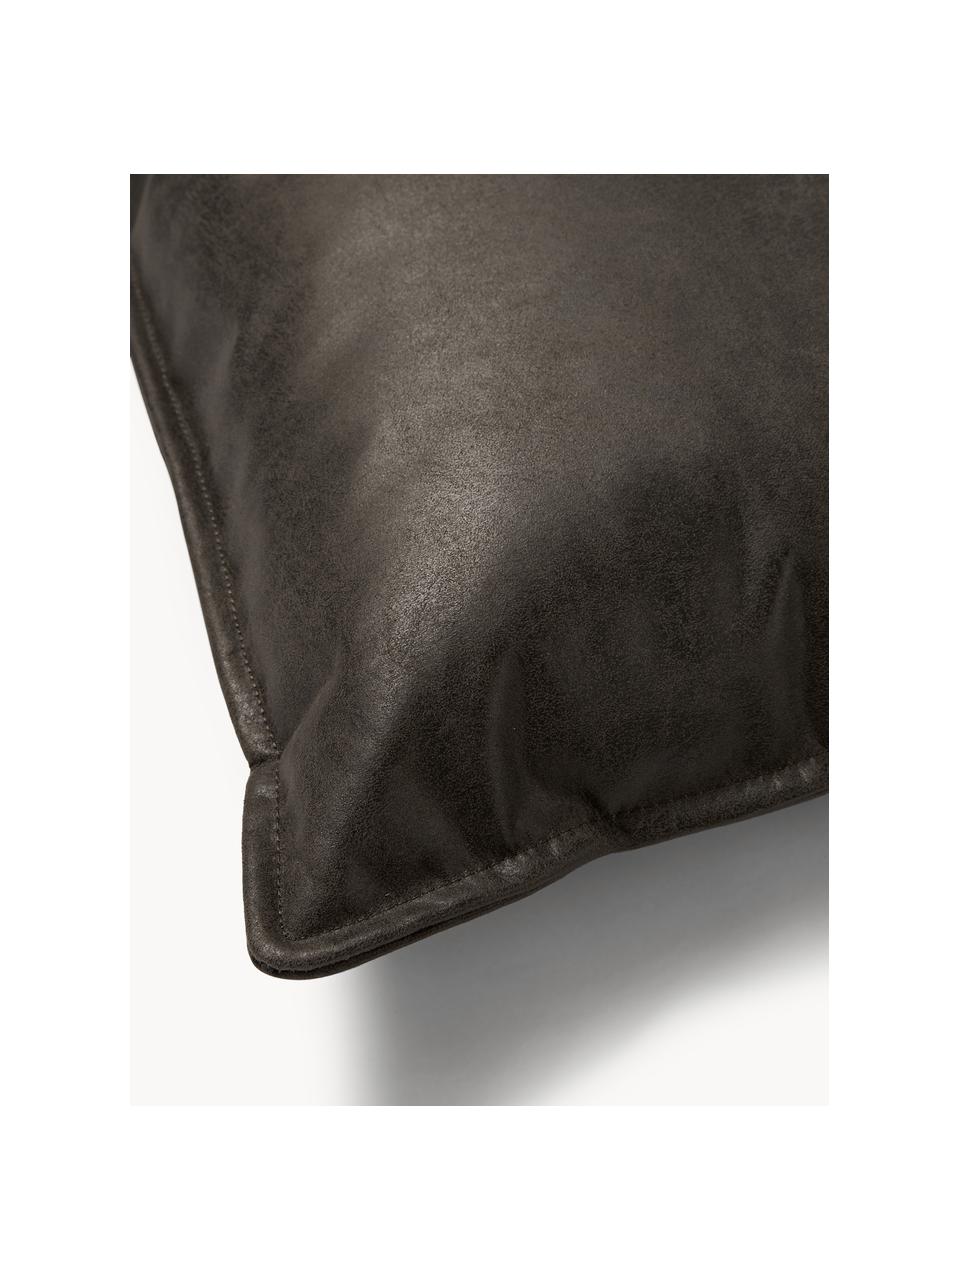 Cojín de cuero reciclado sofá Lennon, Tapizado: cuero reciclado (70% cuer, Estructura: madera maciza, madera con, Patas: plástico, Cuero gris pardo, An 60 x L 60 cm